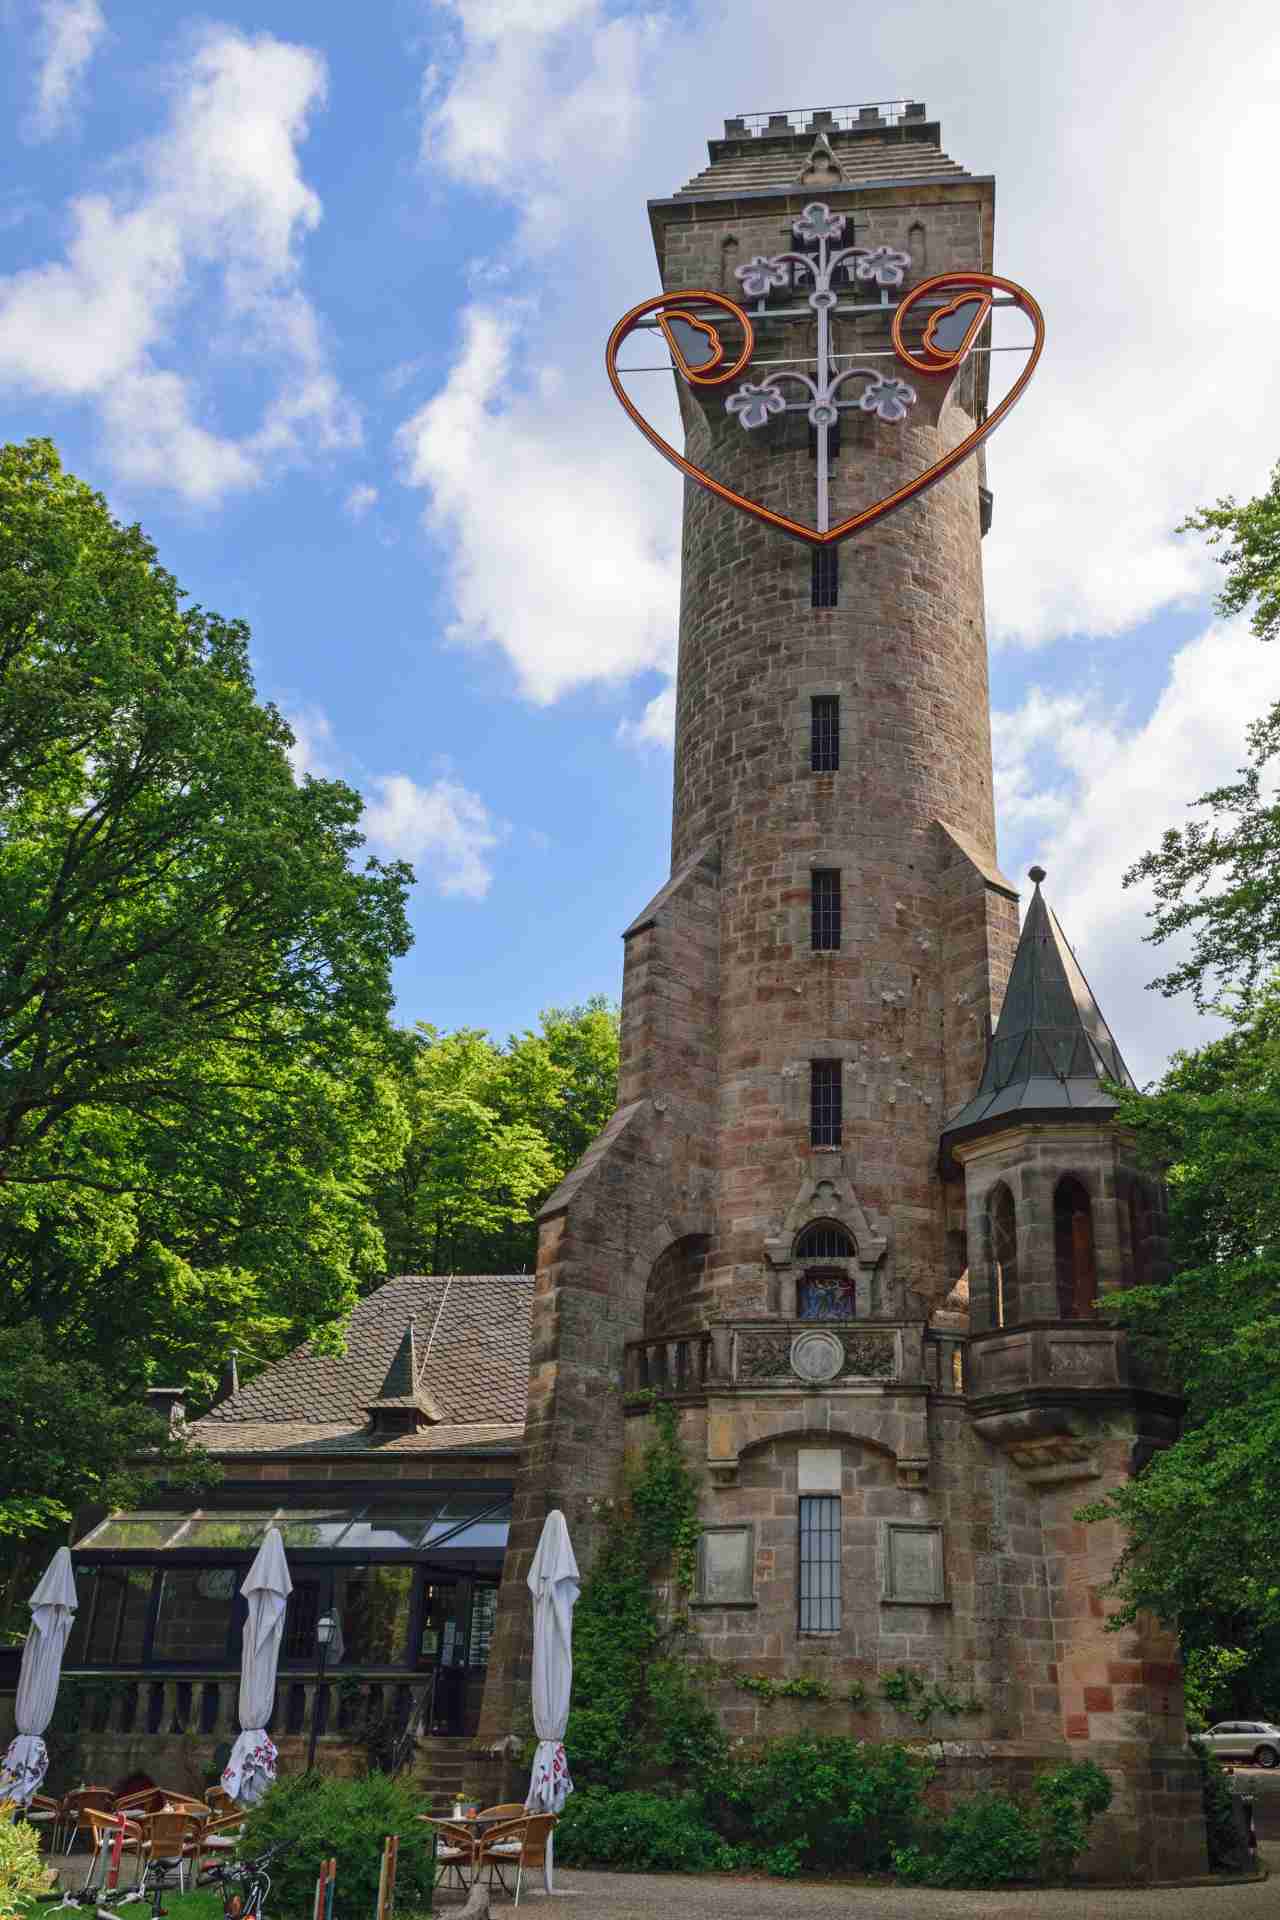 Spiegelslustturm, Marburg, Germany